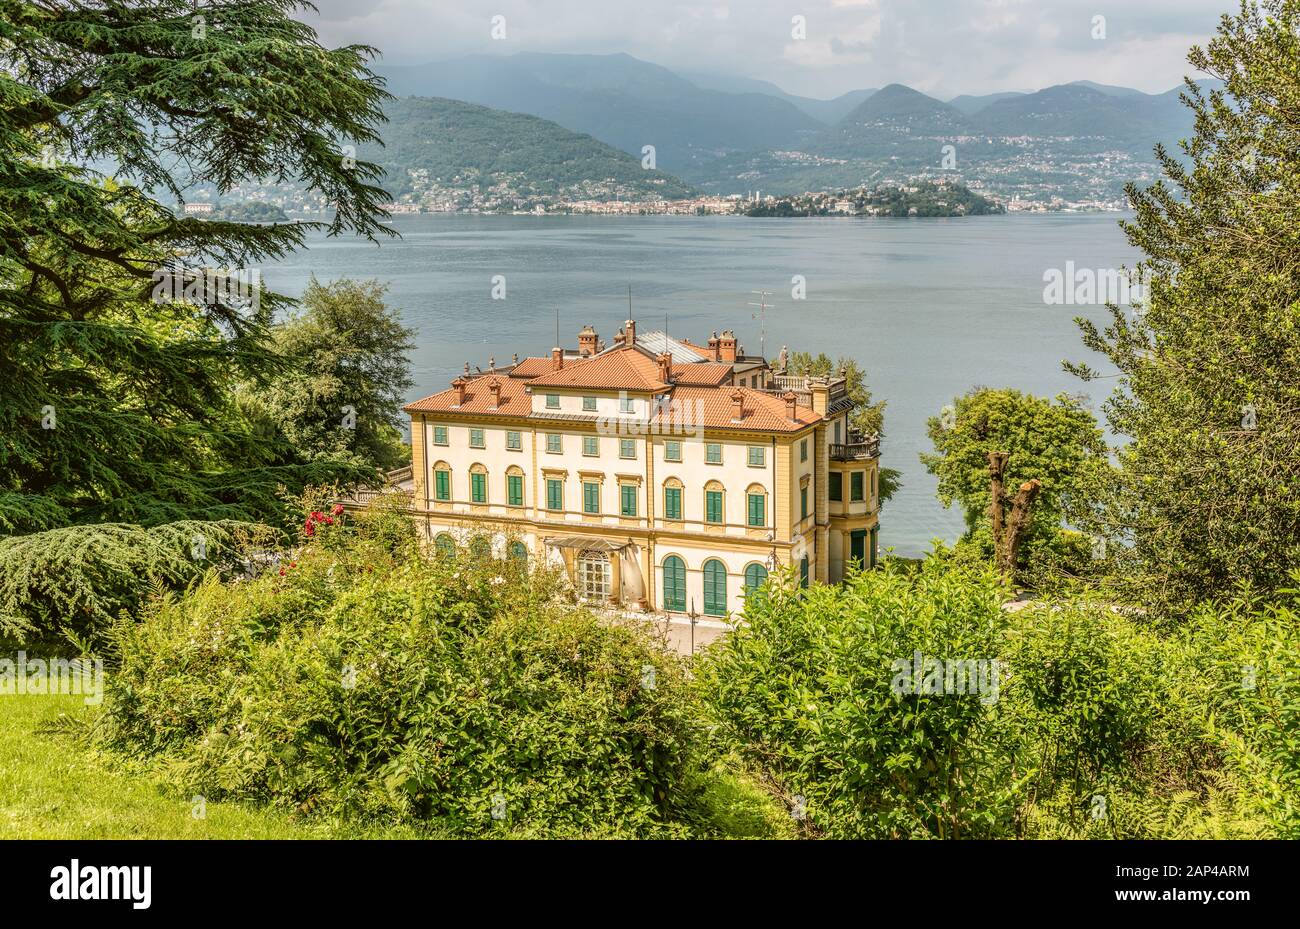 Villa Pallavicino of Stresa at Lago Maggiore, Piemont, Italy Stock Photo